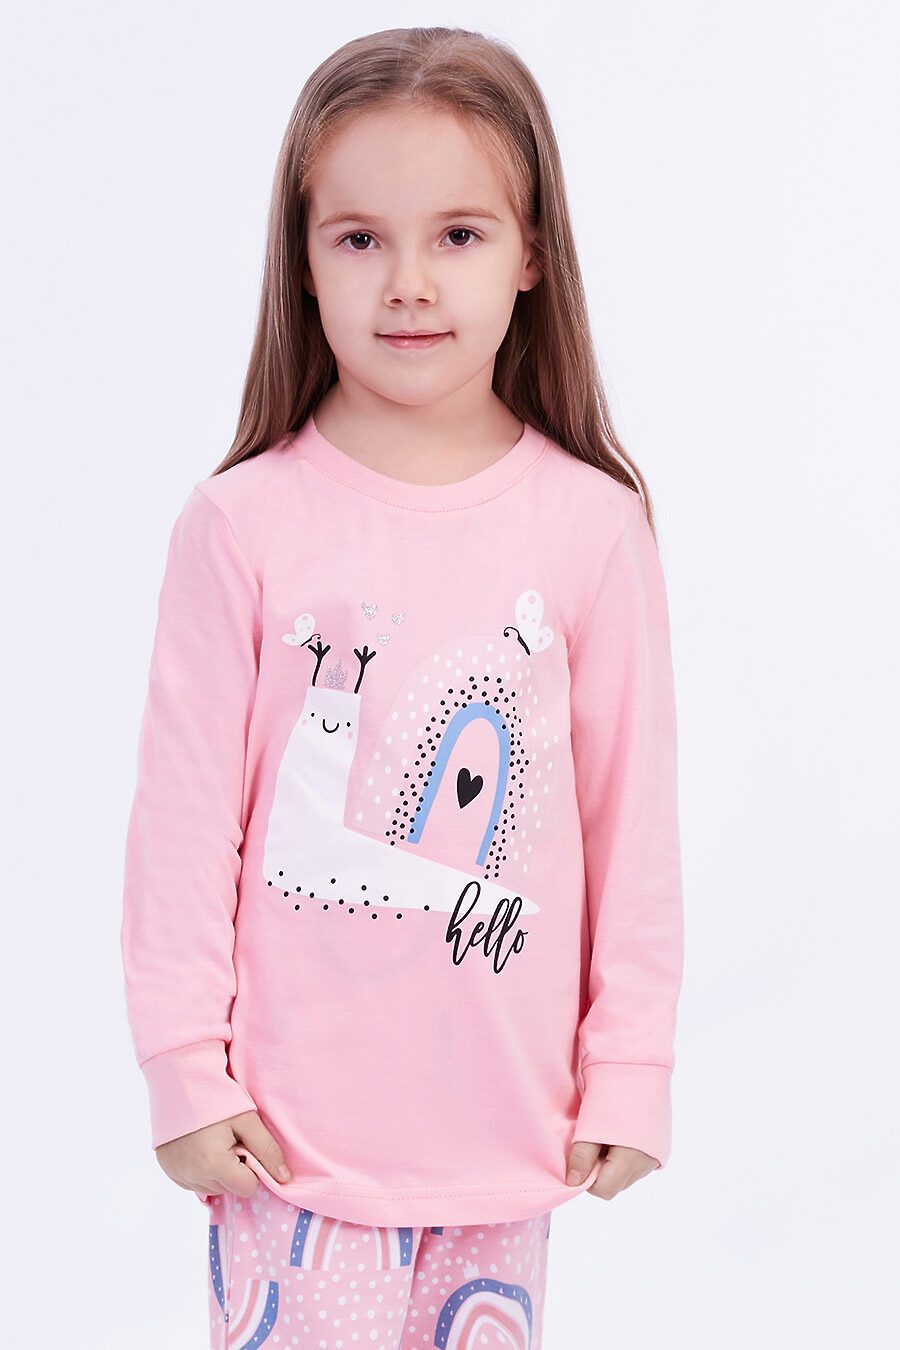 Пижама для девочек ELEMENTARNO 742816 купить оптом от производителя. Совместная покупка детской одежды в OptMoyo